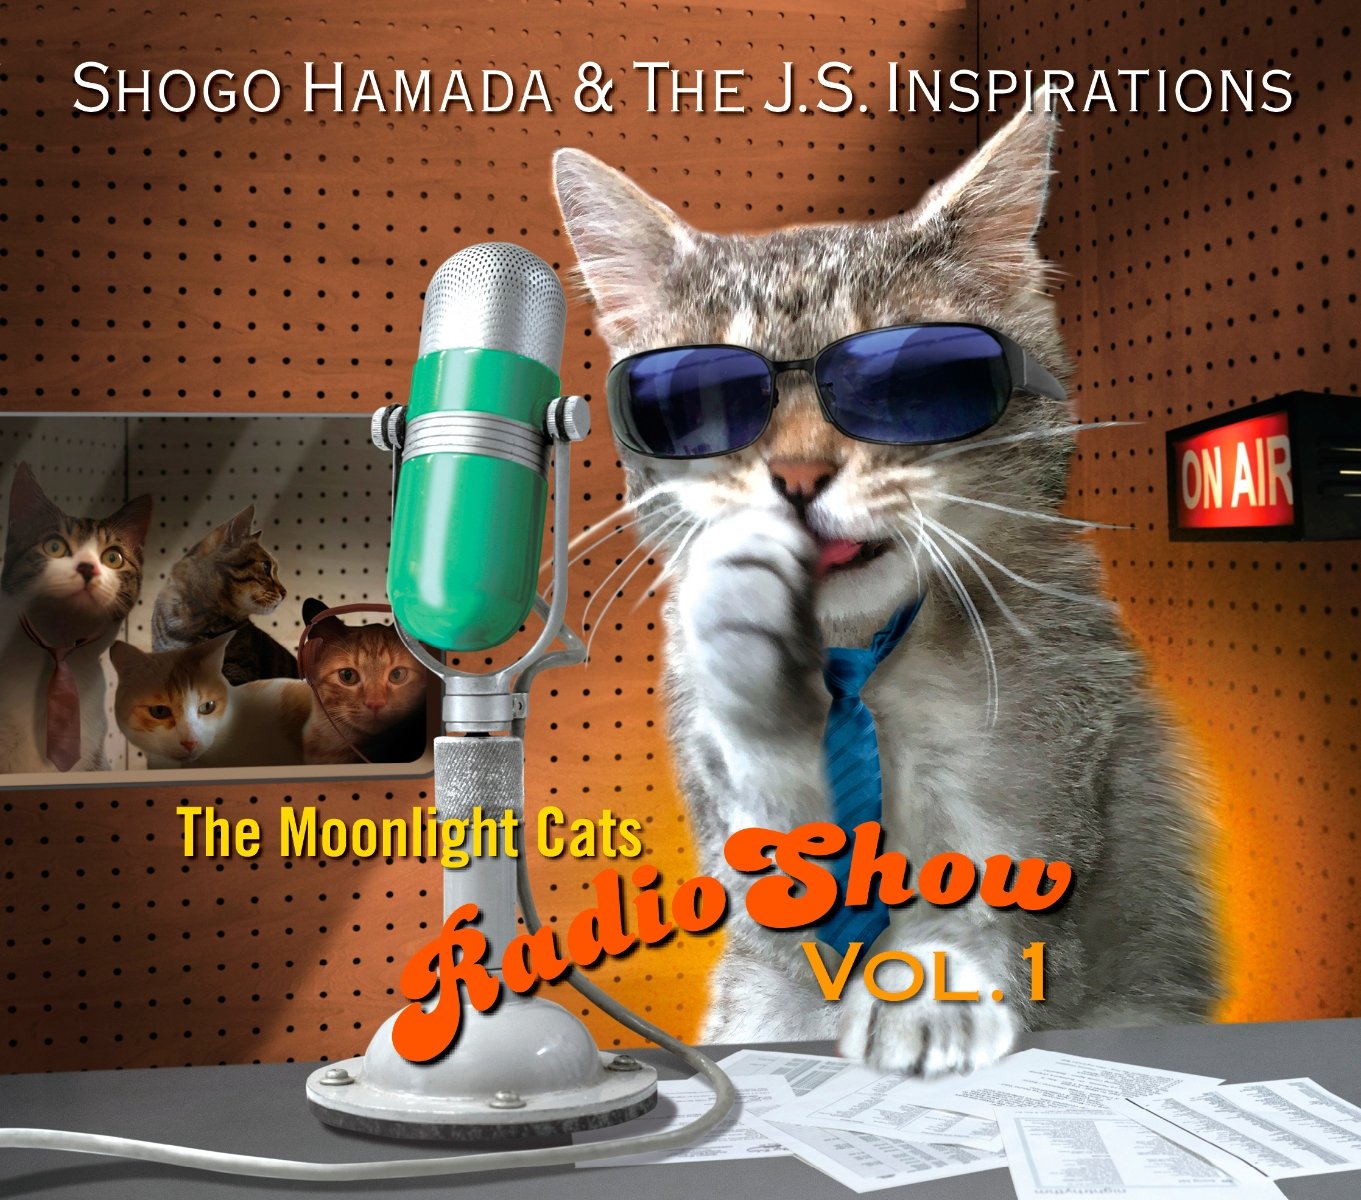 CD Shop - HAMADA, SHOGO & THE J.S. MOONLIGHT CATS RADIO SHOW VOL.1